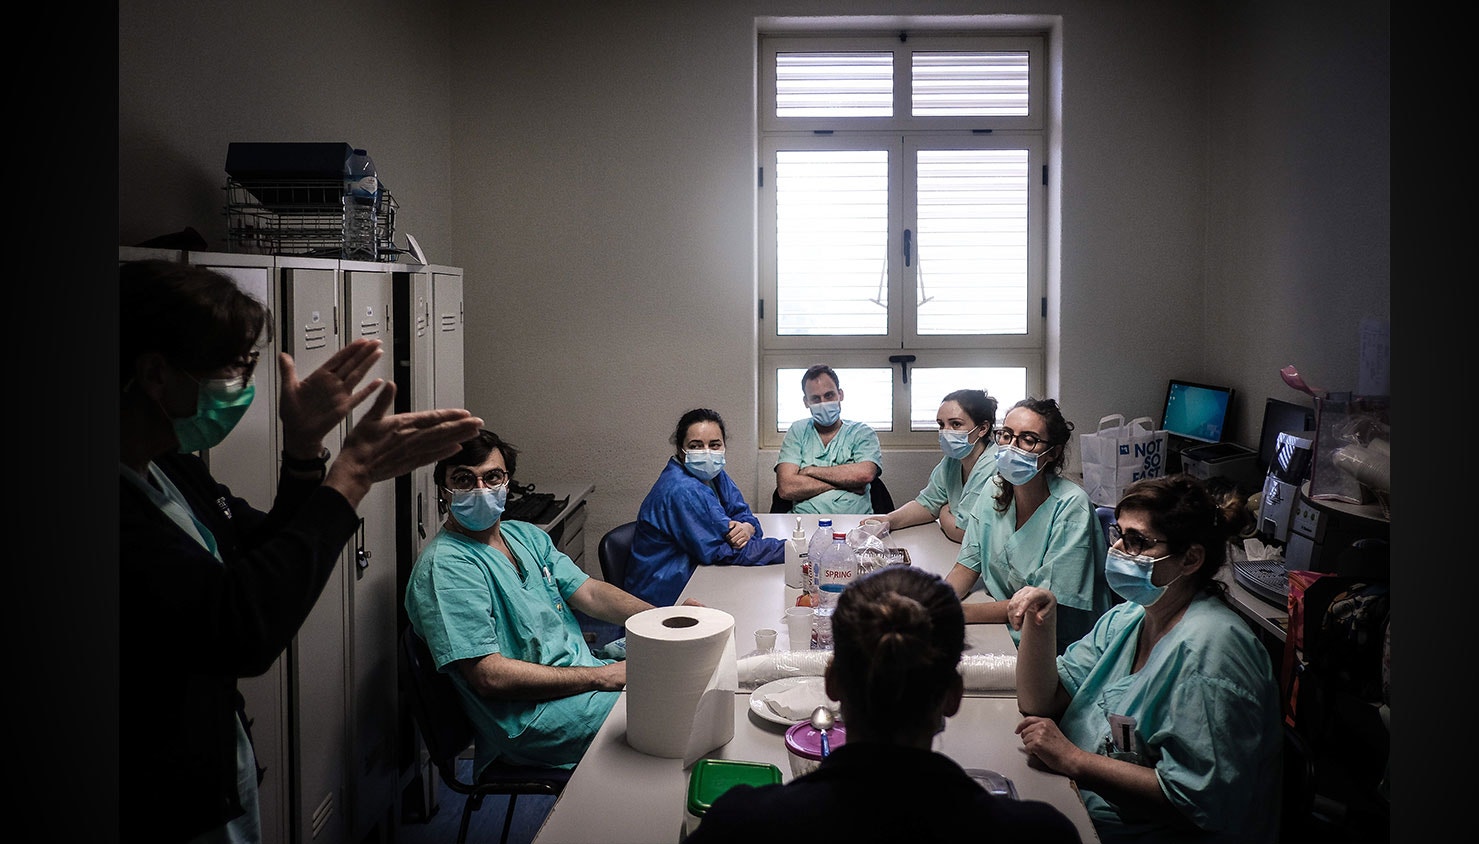  Enfermeiros conversam durante uma pausa para refei&ccedil;&atilde;o, na Unidade de cuidados intensivos. / M&aacute;rio Cruz - Lusa 